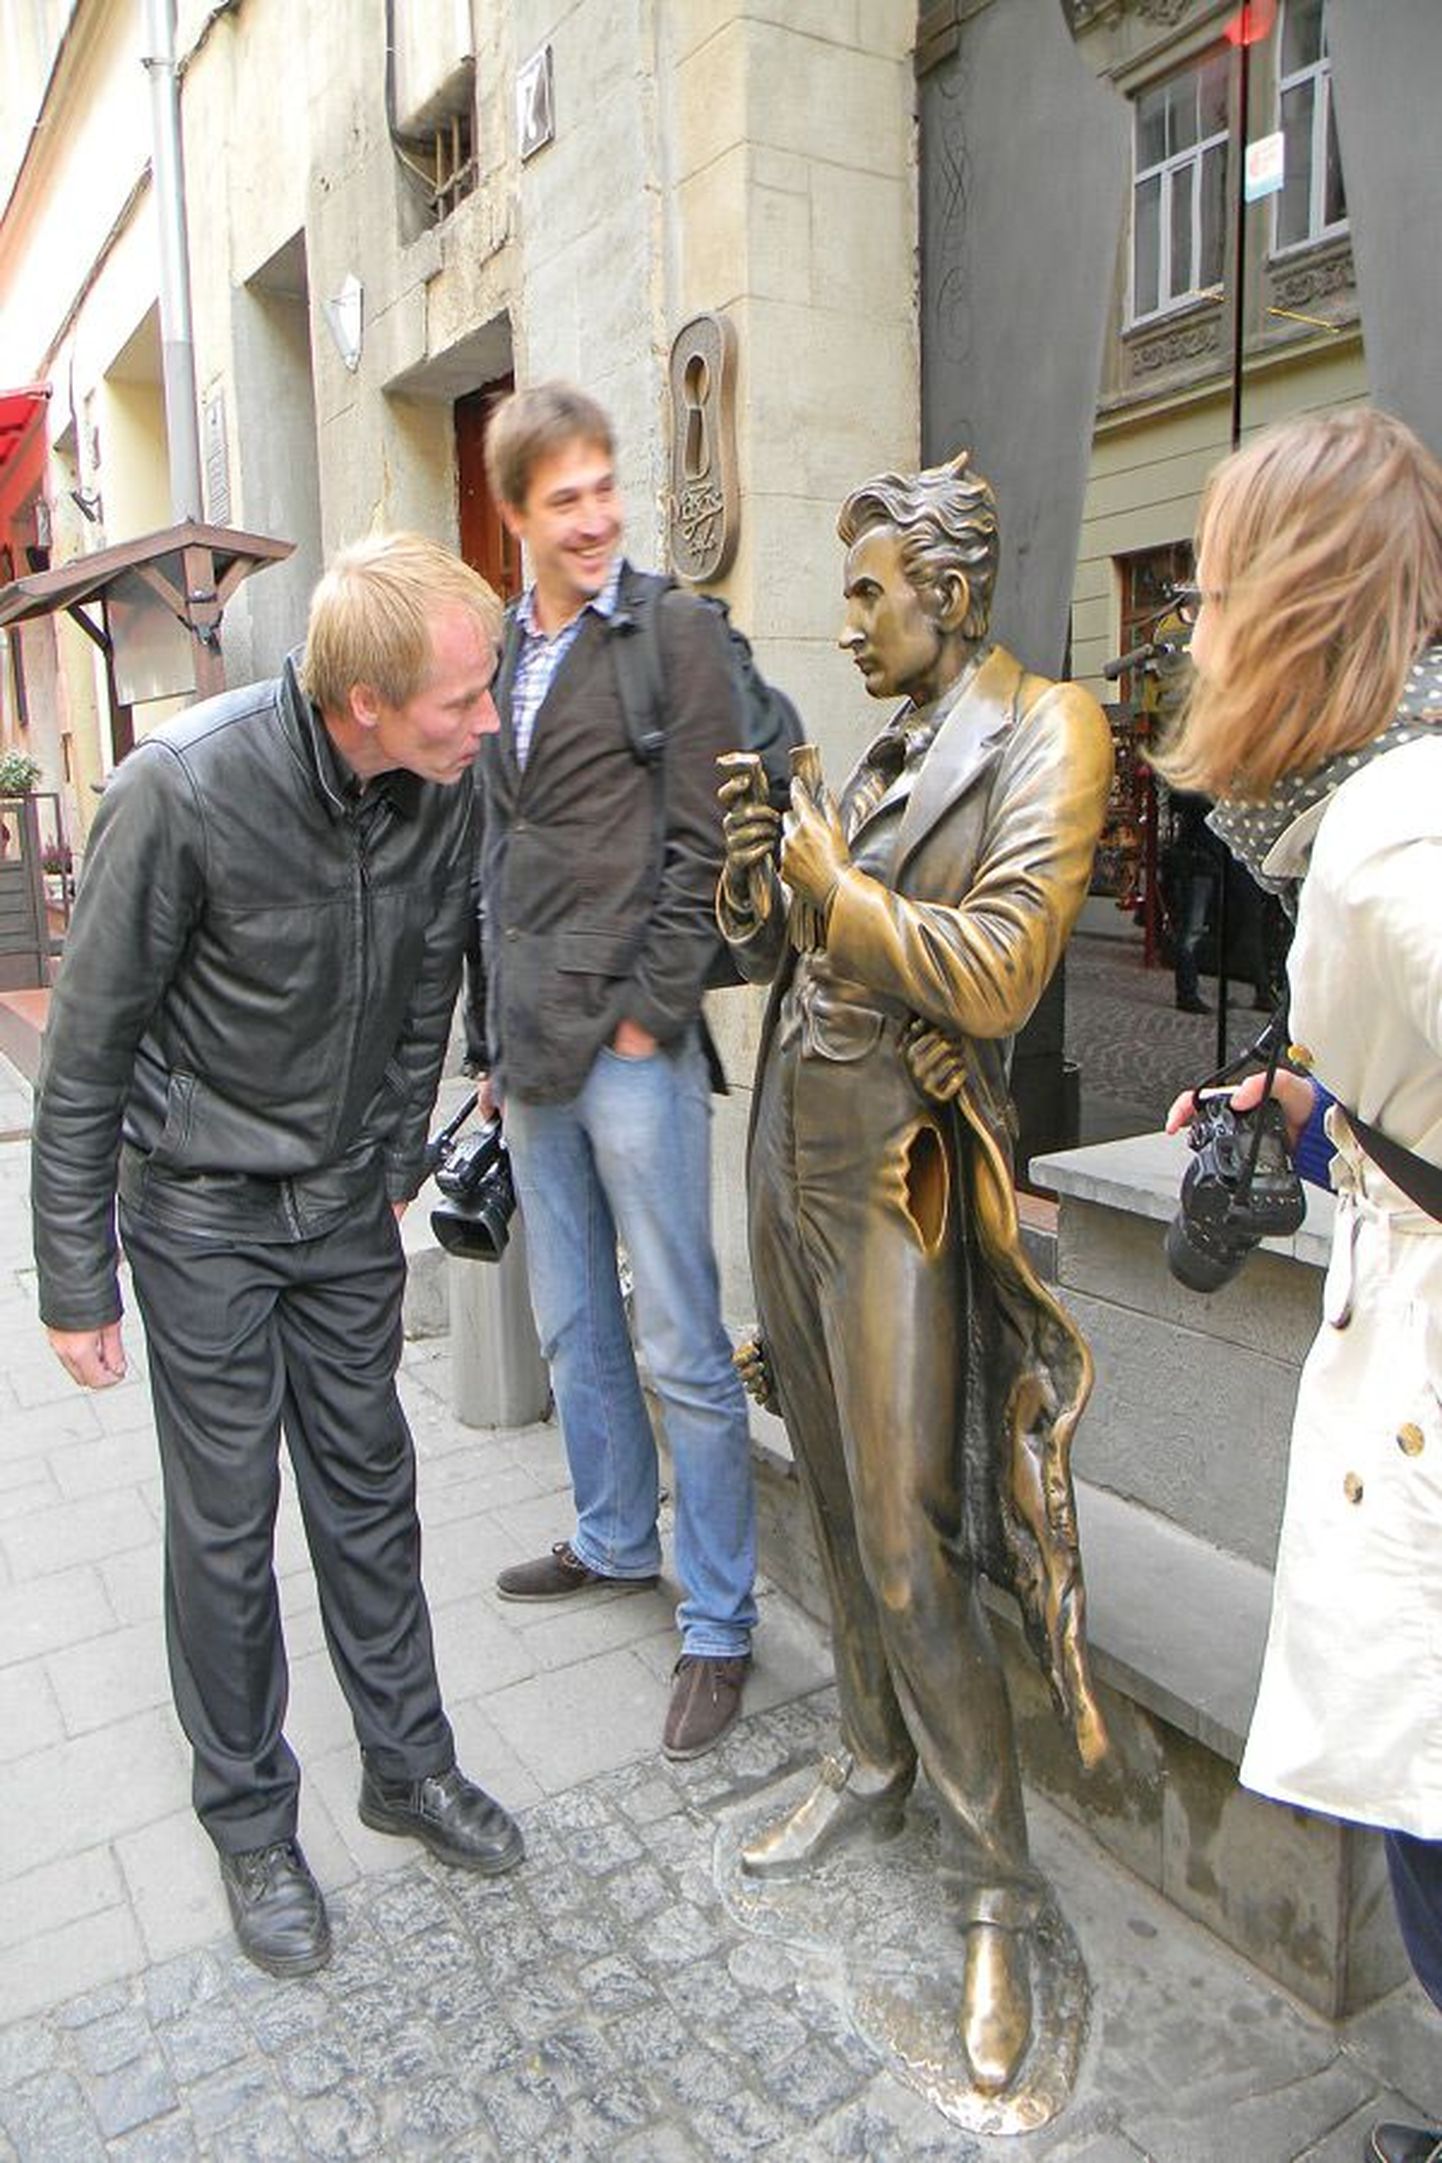 У туристов очень популярен установленный в 2008 году памятник уроженцу Львова знаменитому писателю Леопольду фон Захер-Мазоху, выполненный не без юмора — на груди у него вделана лупа с эротической картинкой, а заглянув в карман брюк, можно увидеть гениталии.